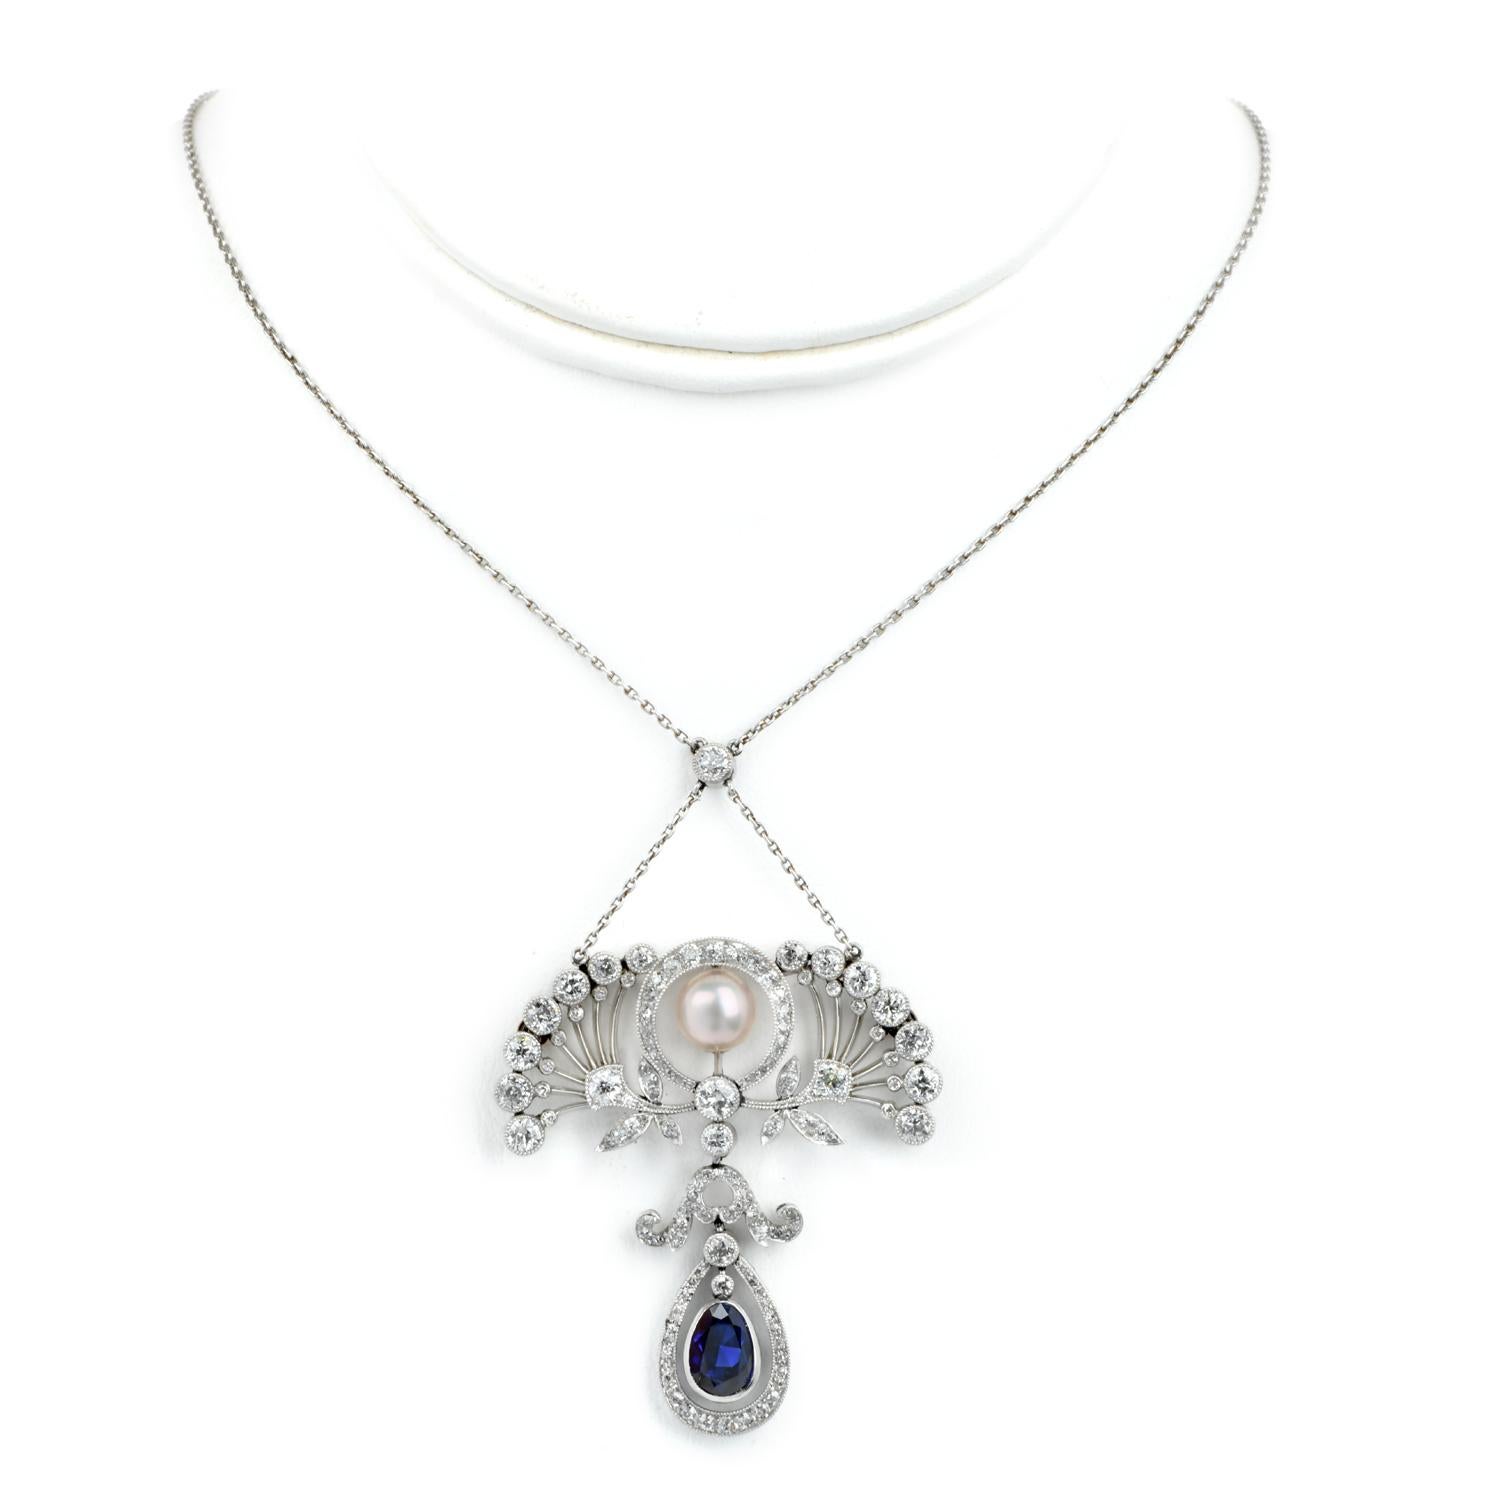 Ein königliches Stück aus den späten 1800er Jahren.

Diese antike Edwardian Diamond GIA Natural Pearl Sapphire Platinum Floral Anhänger Kette Halskette wird Romantik jedes Abendkleid.

Gefertigt aus massivem Platin mit Akzenten aus 18 Karat